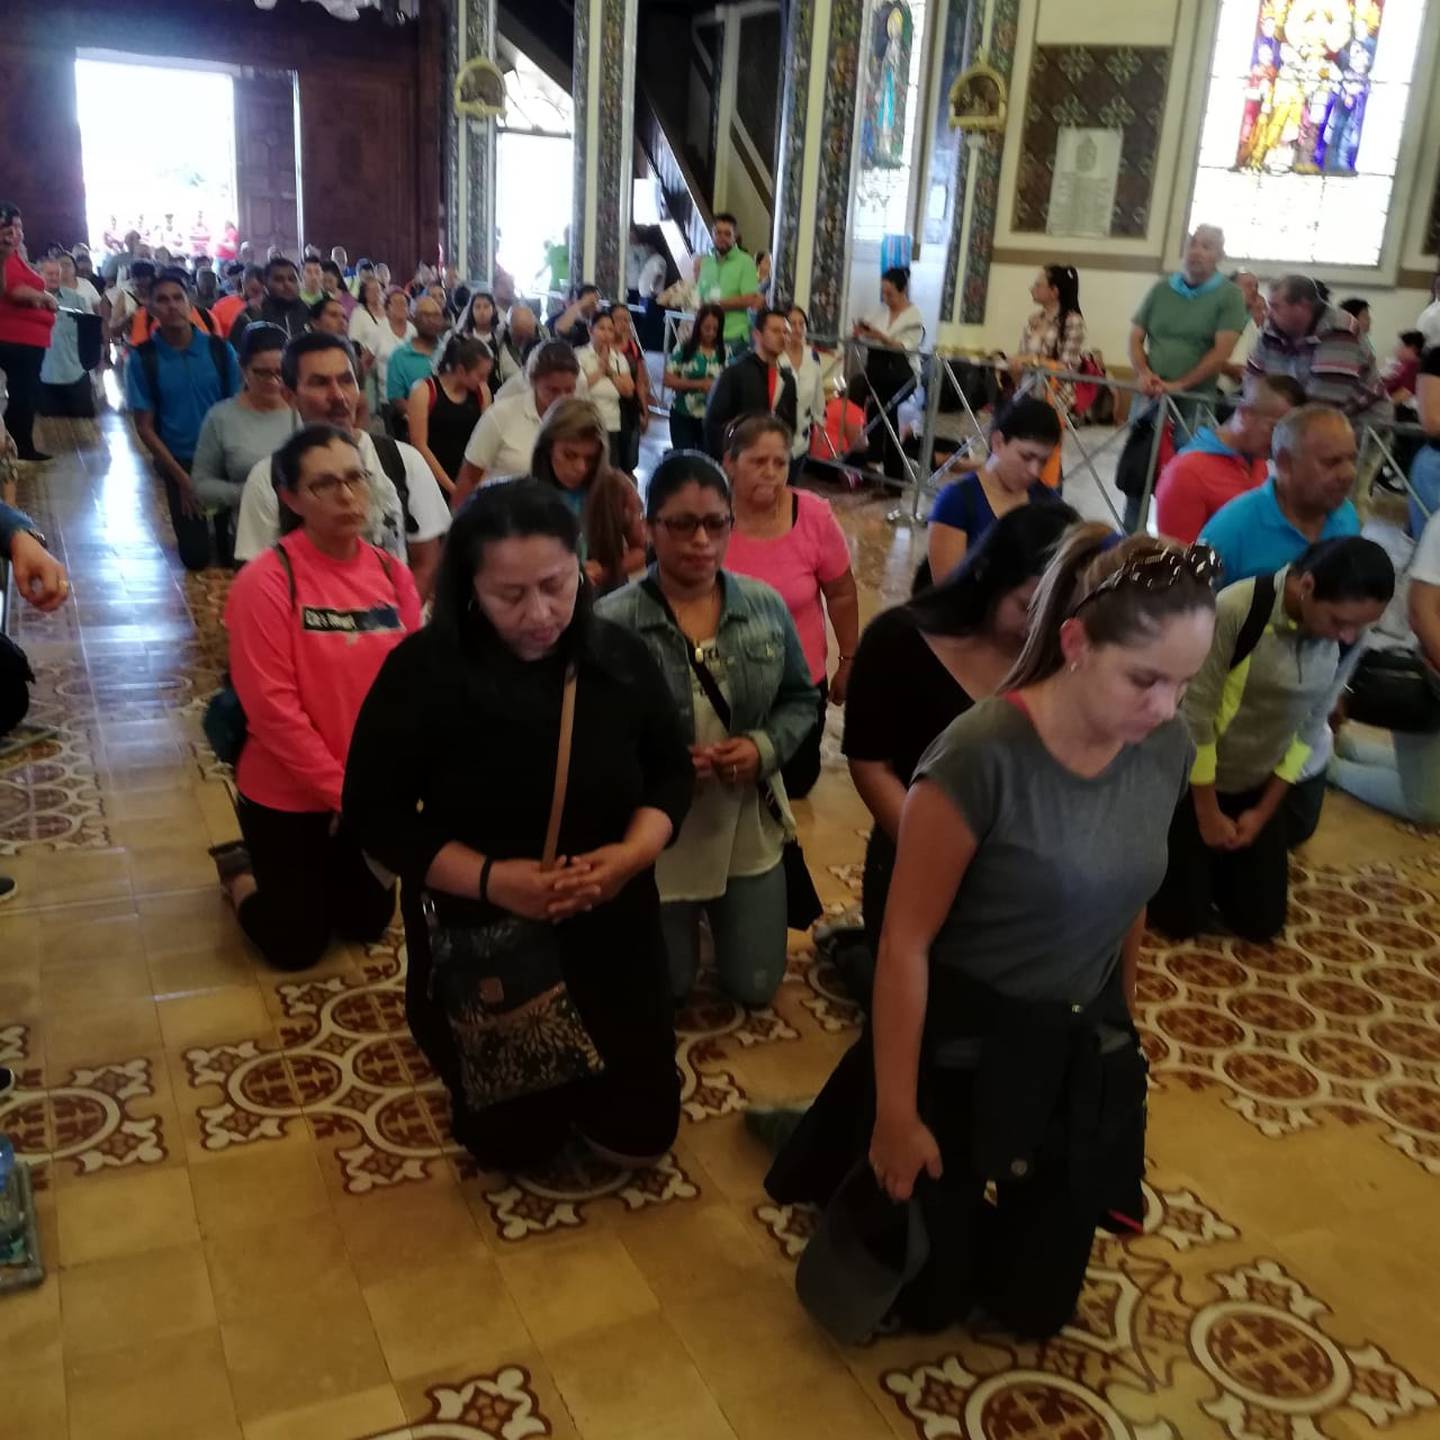 Los católicos aprovecharon el sábado 27 de julio para hacer la romería